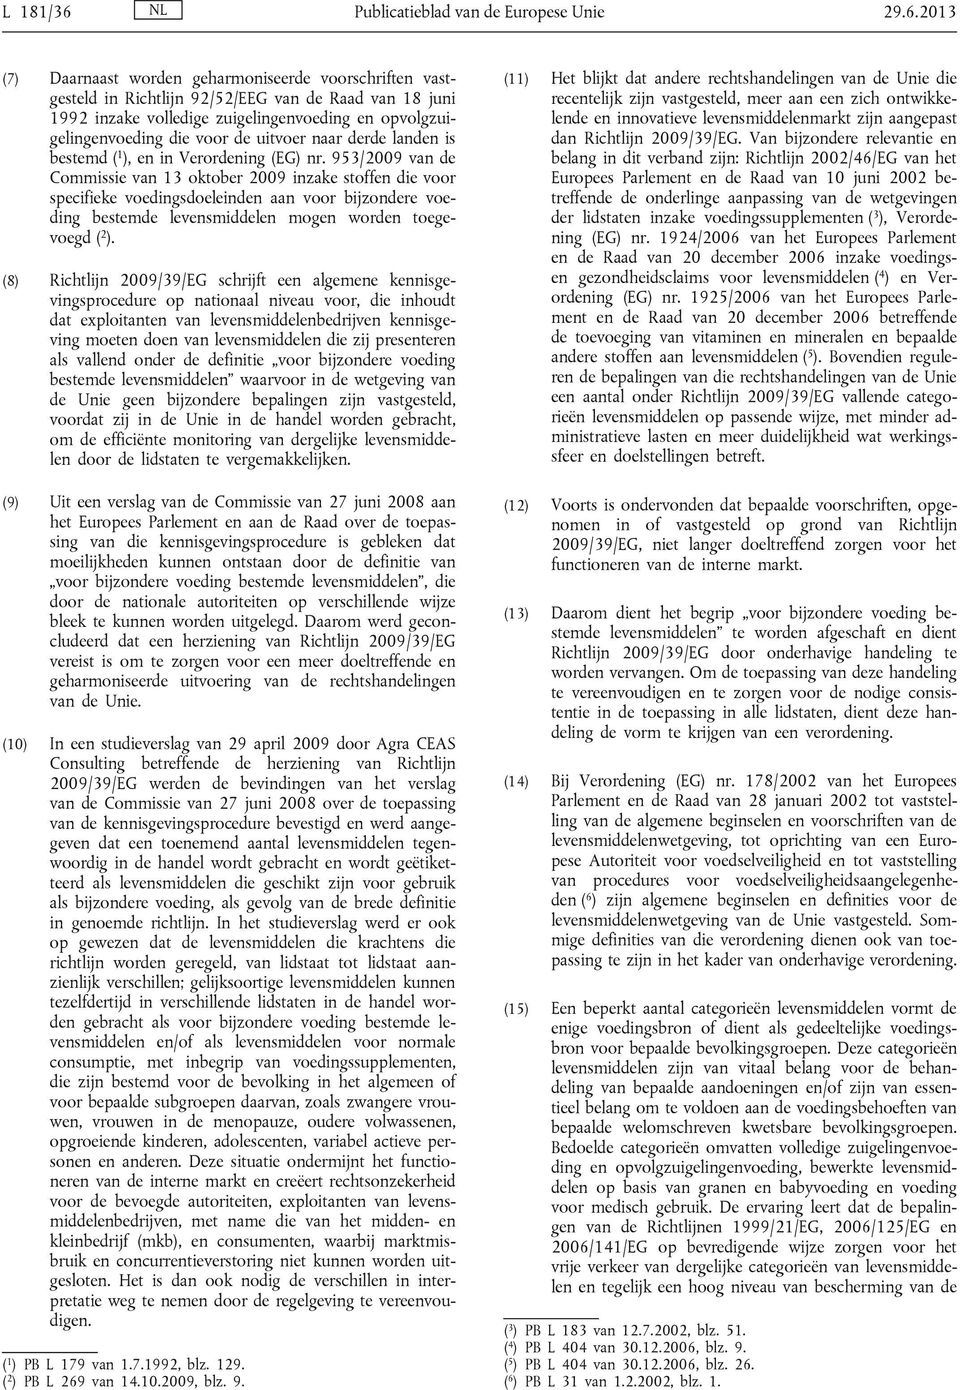 2013 (7) Daarnaast worden geharmoniseerde voorschriften vastgesteld in Richtlijn 92/52/EEG van de Raad van 18 juni 1992 inzake volledige zuigelingenvoeding en opvolgzuigelingenvoeding die voor de